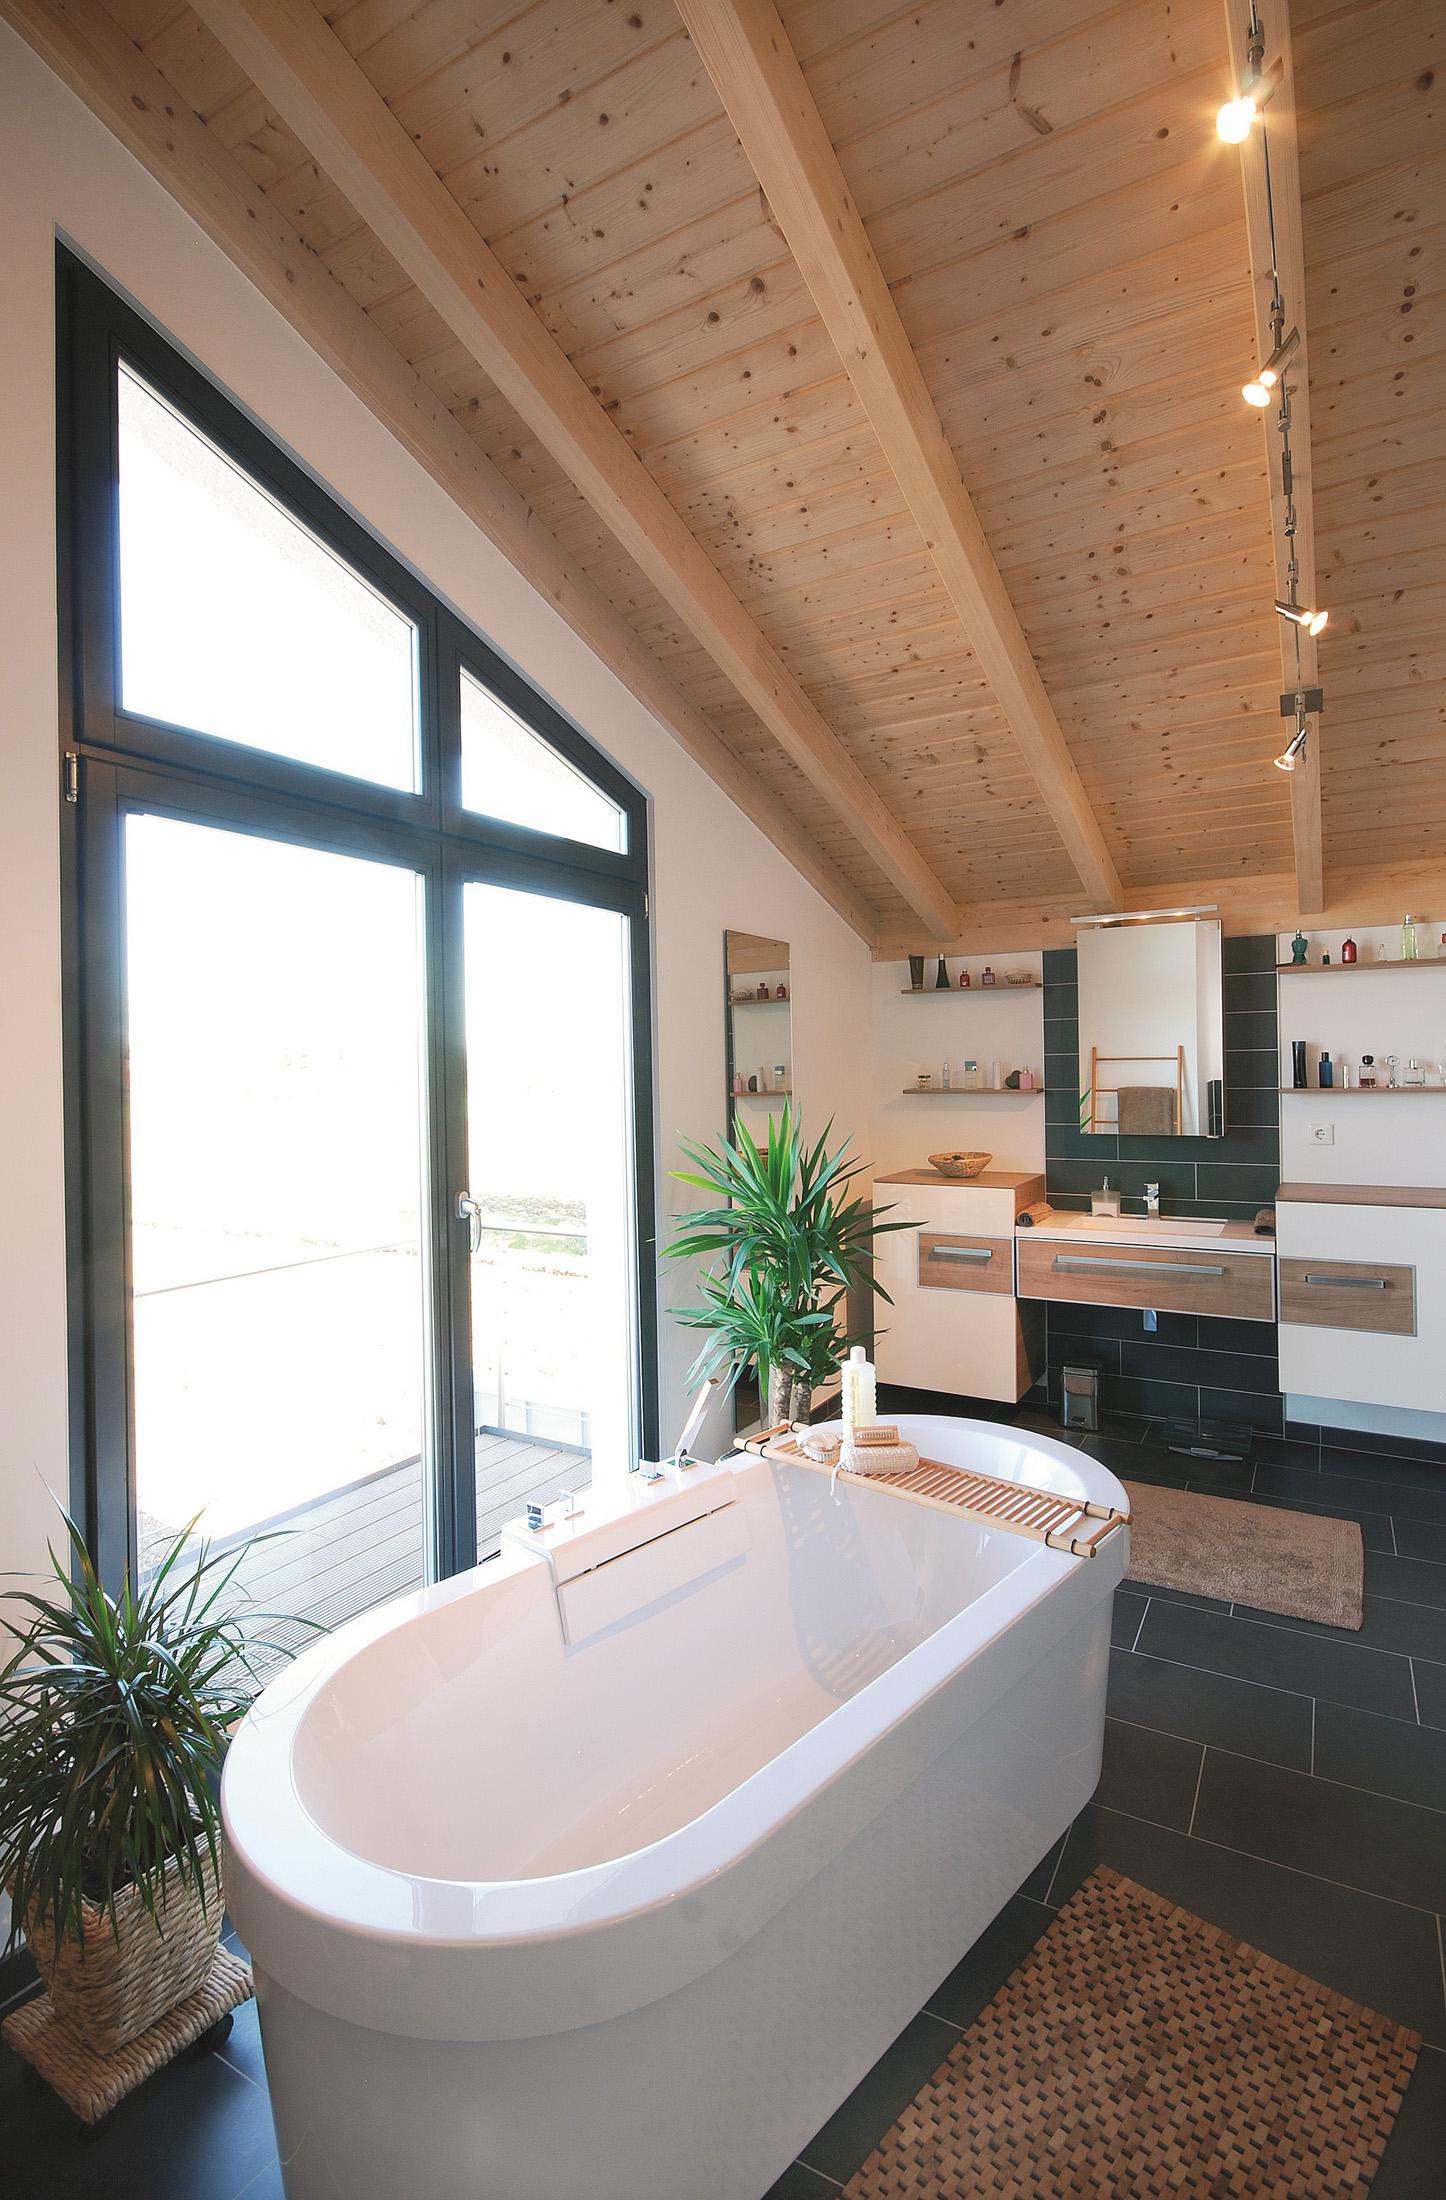 Freistehende Badewanne mit Wannenablage #badewanne #badezimmerspiegel #holzdecke ©Stommel Haus